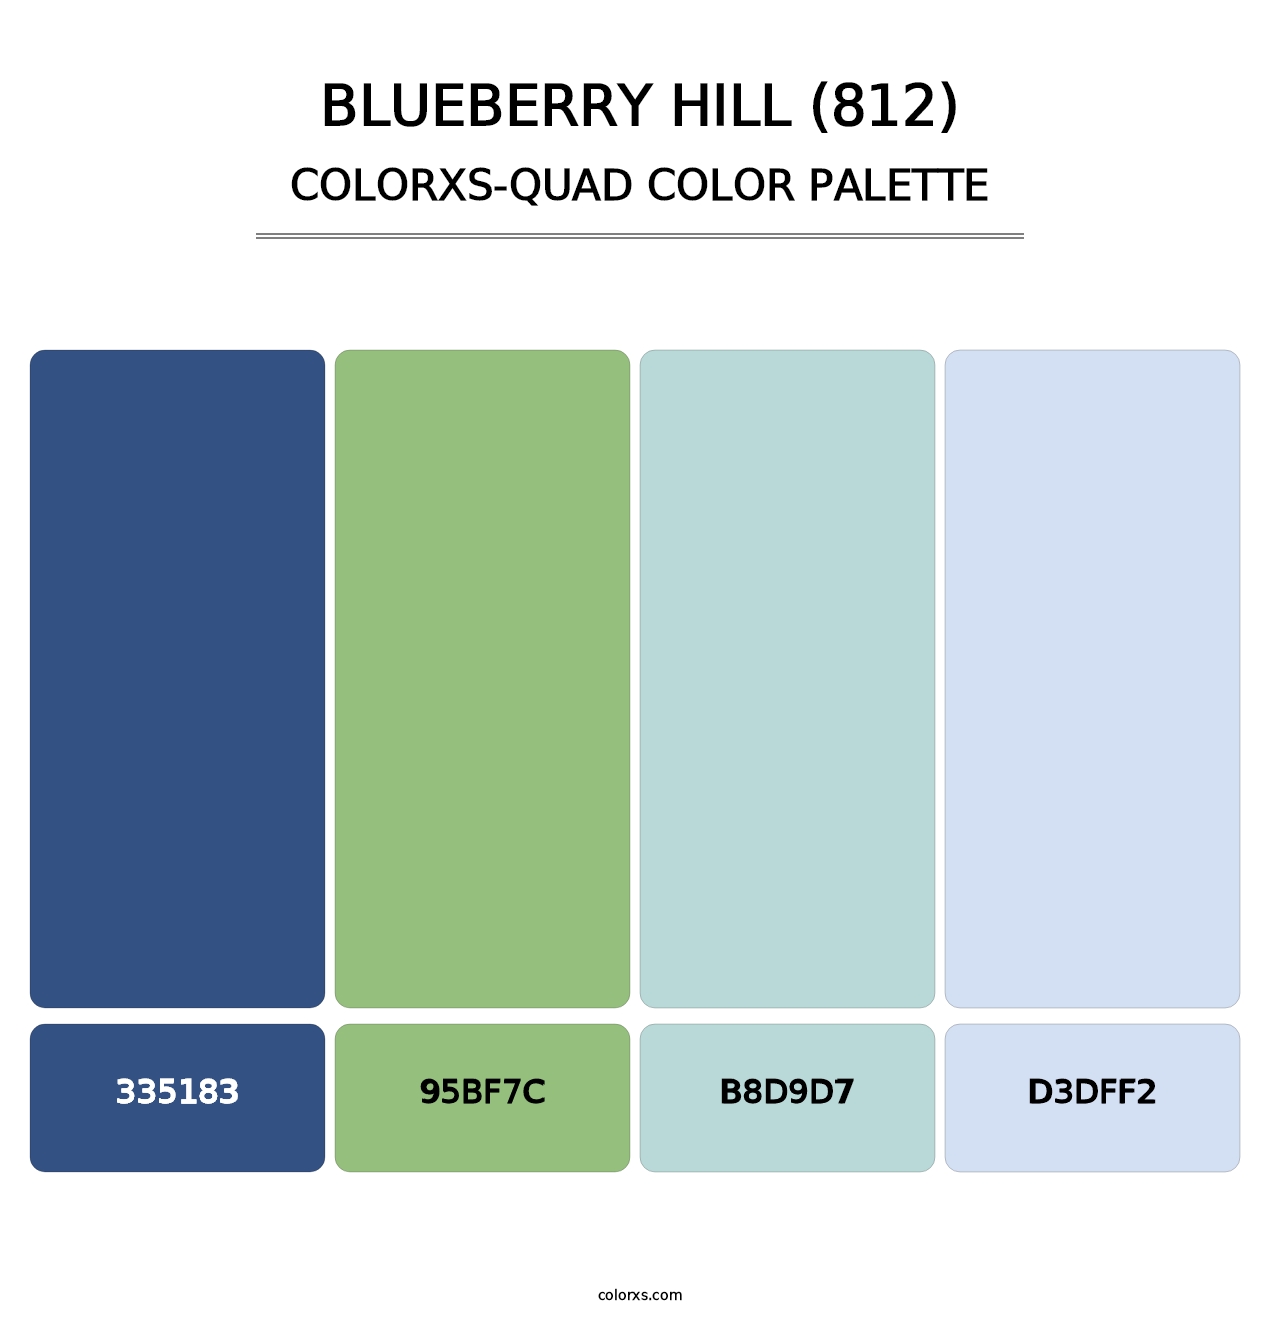 Blueberry Hill (812) - Colorxs Quad Palette